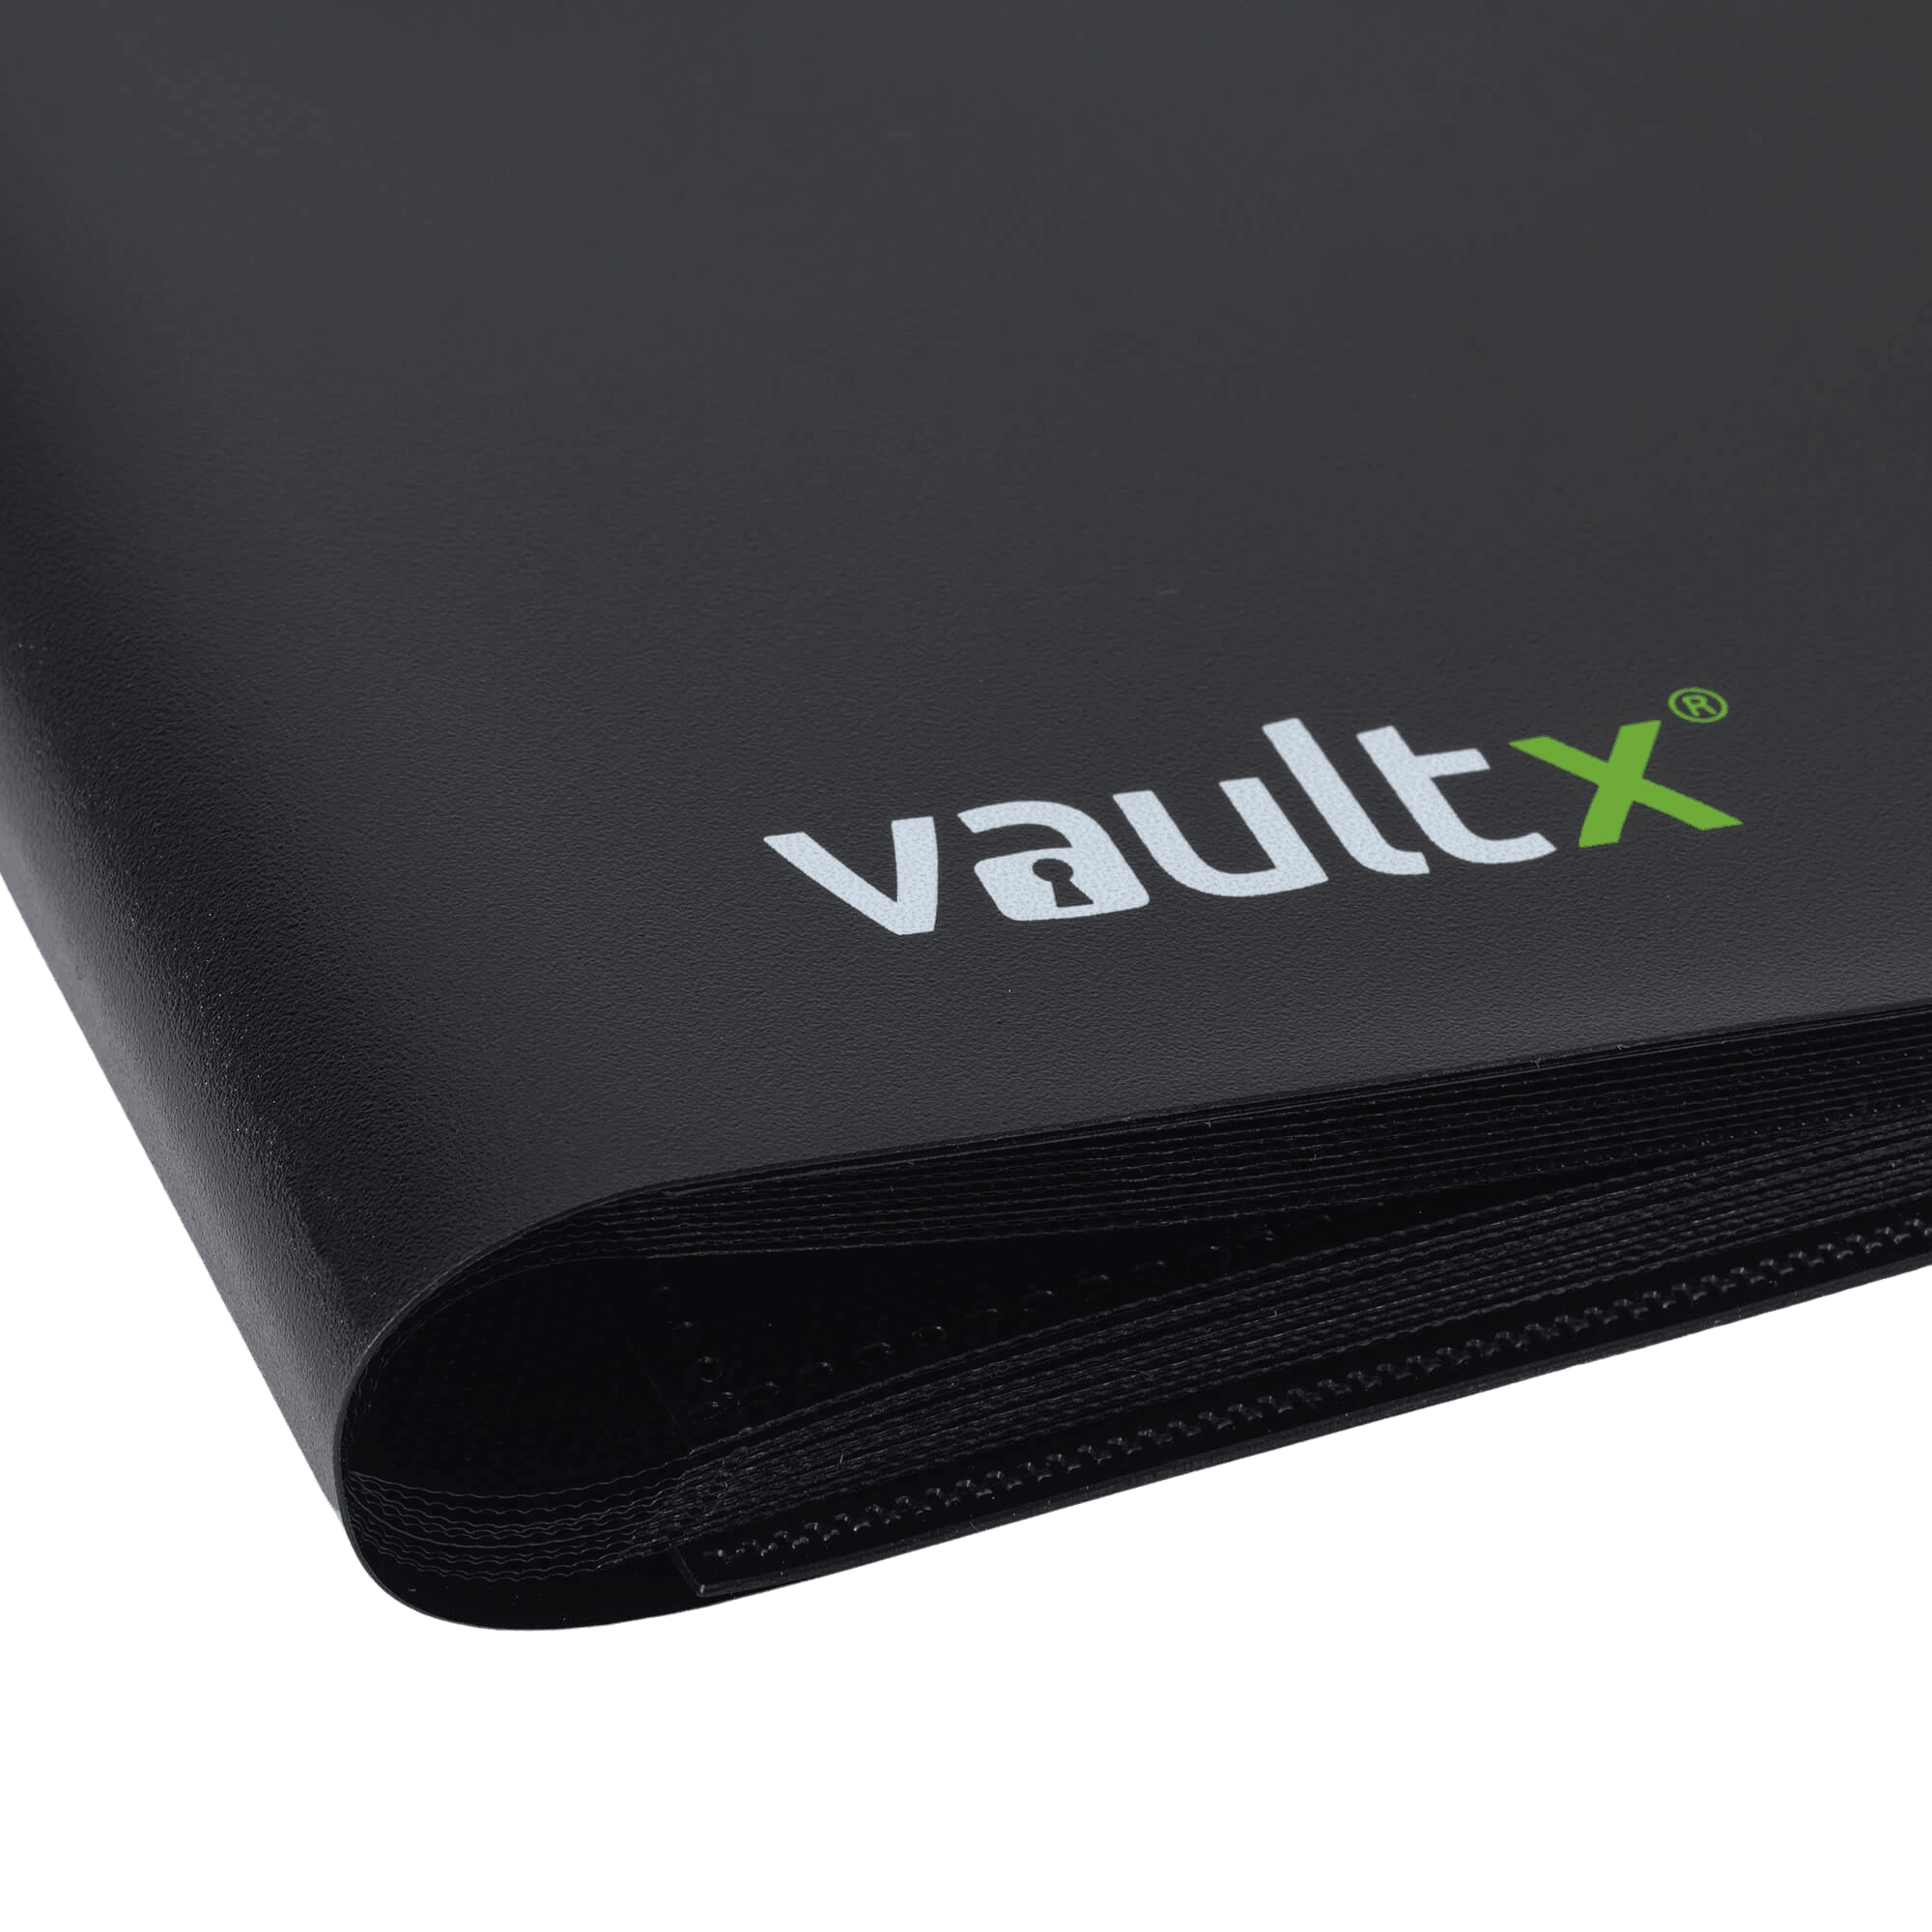 Vault X 12-Pocket Strap Binder - Black - The Card Vault